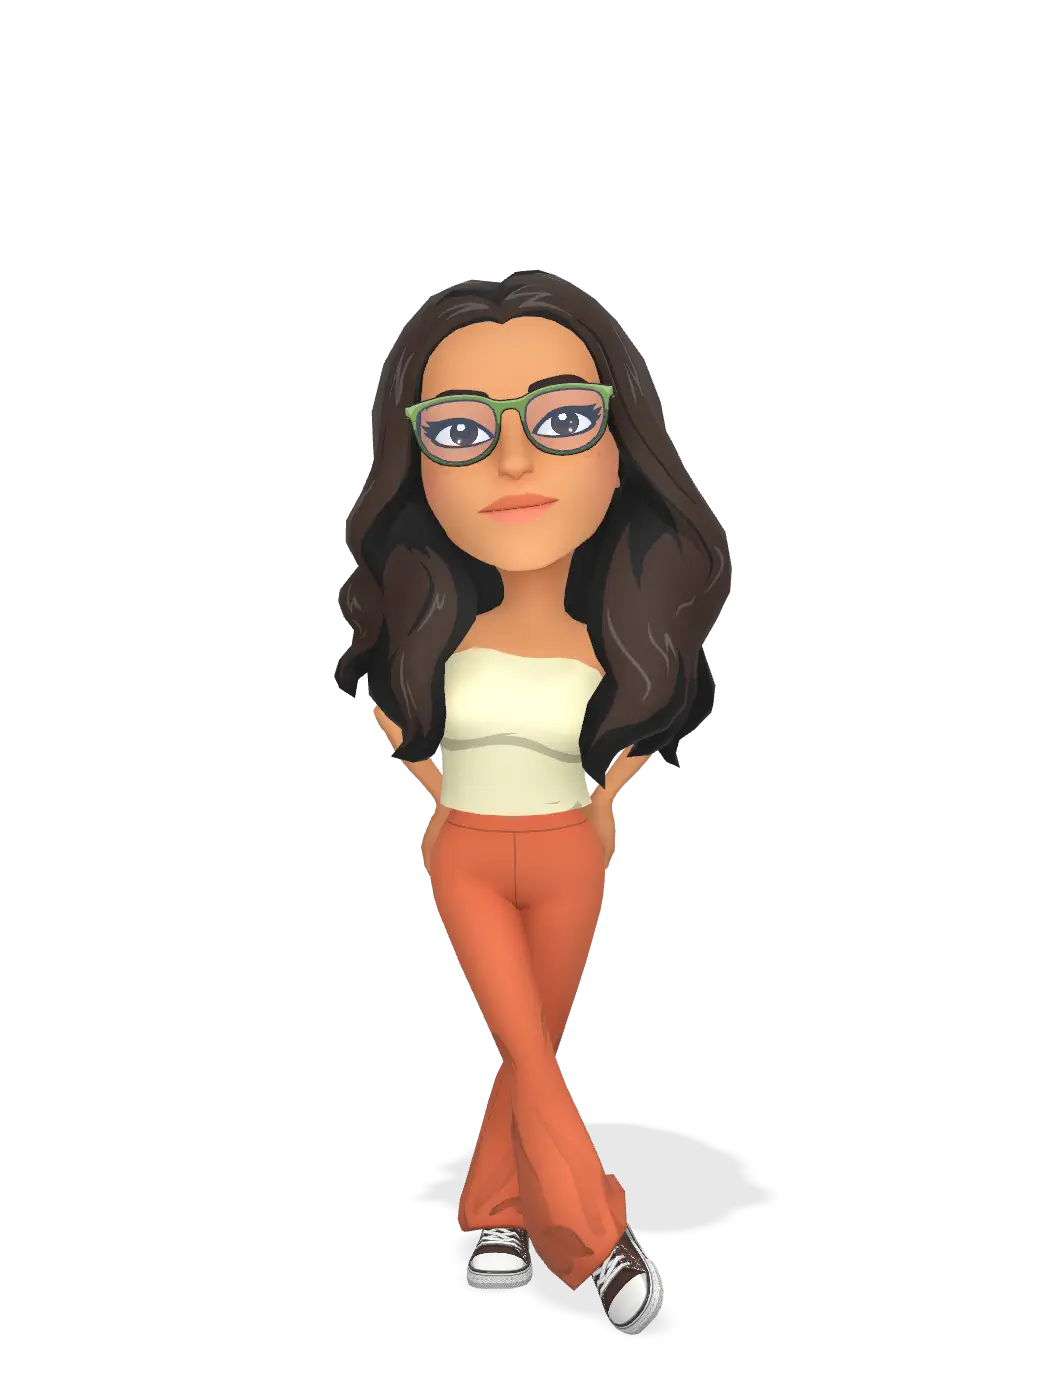 3D Bitmoji for chearbear06 avatar